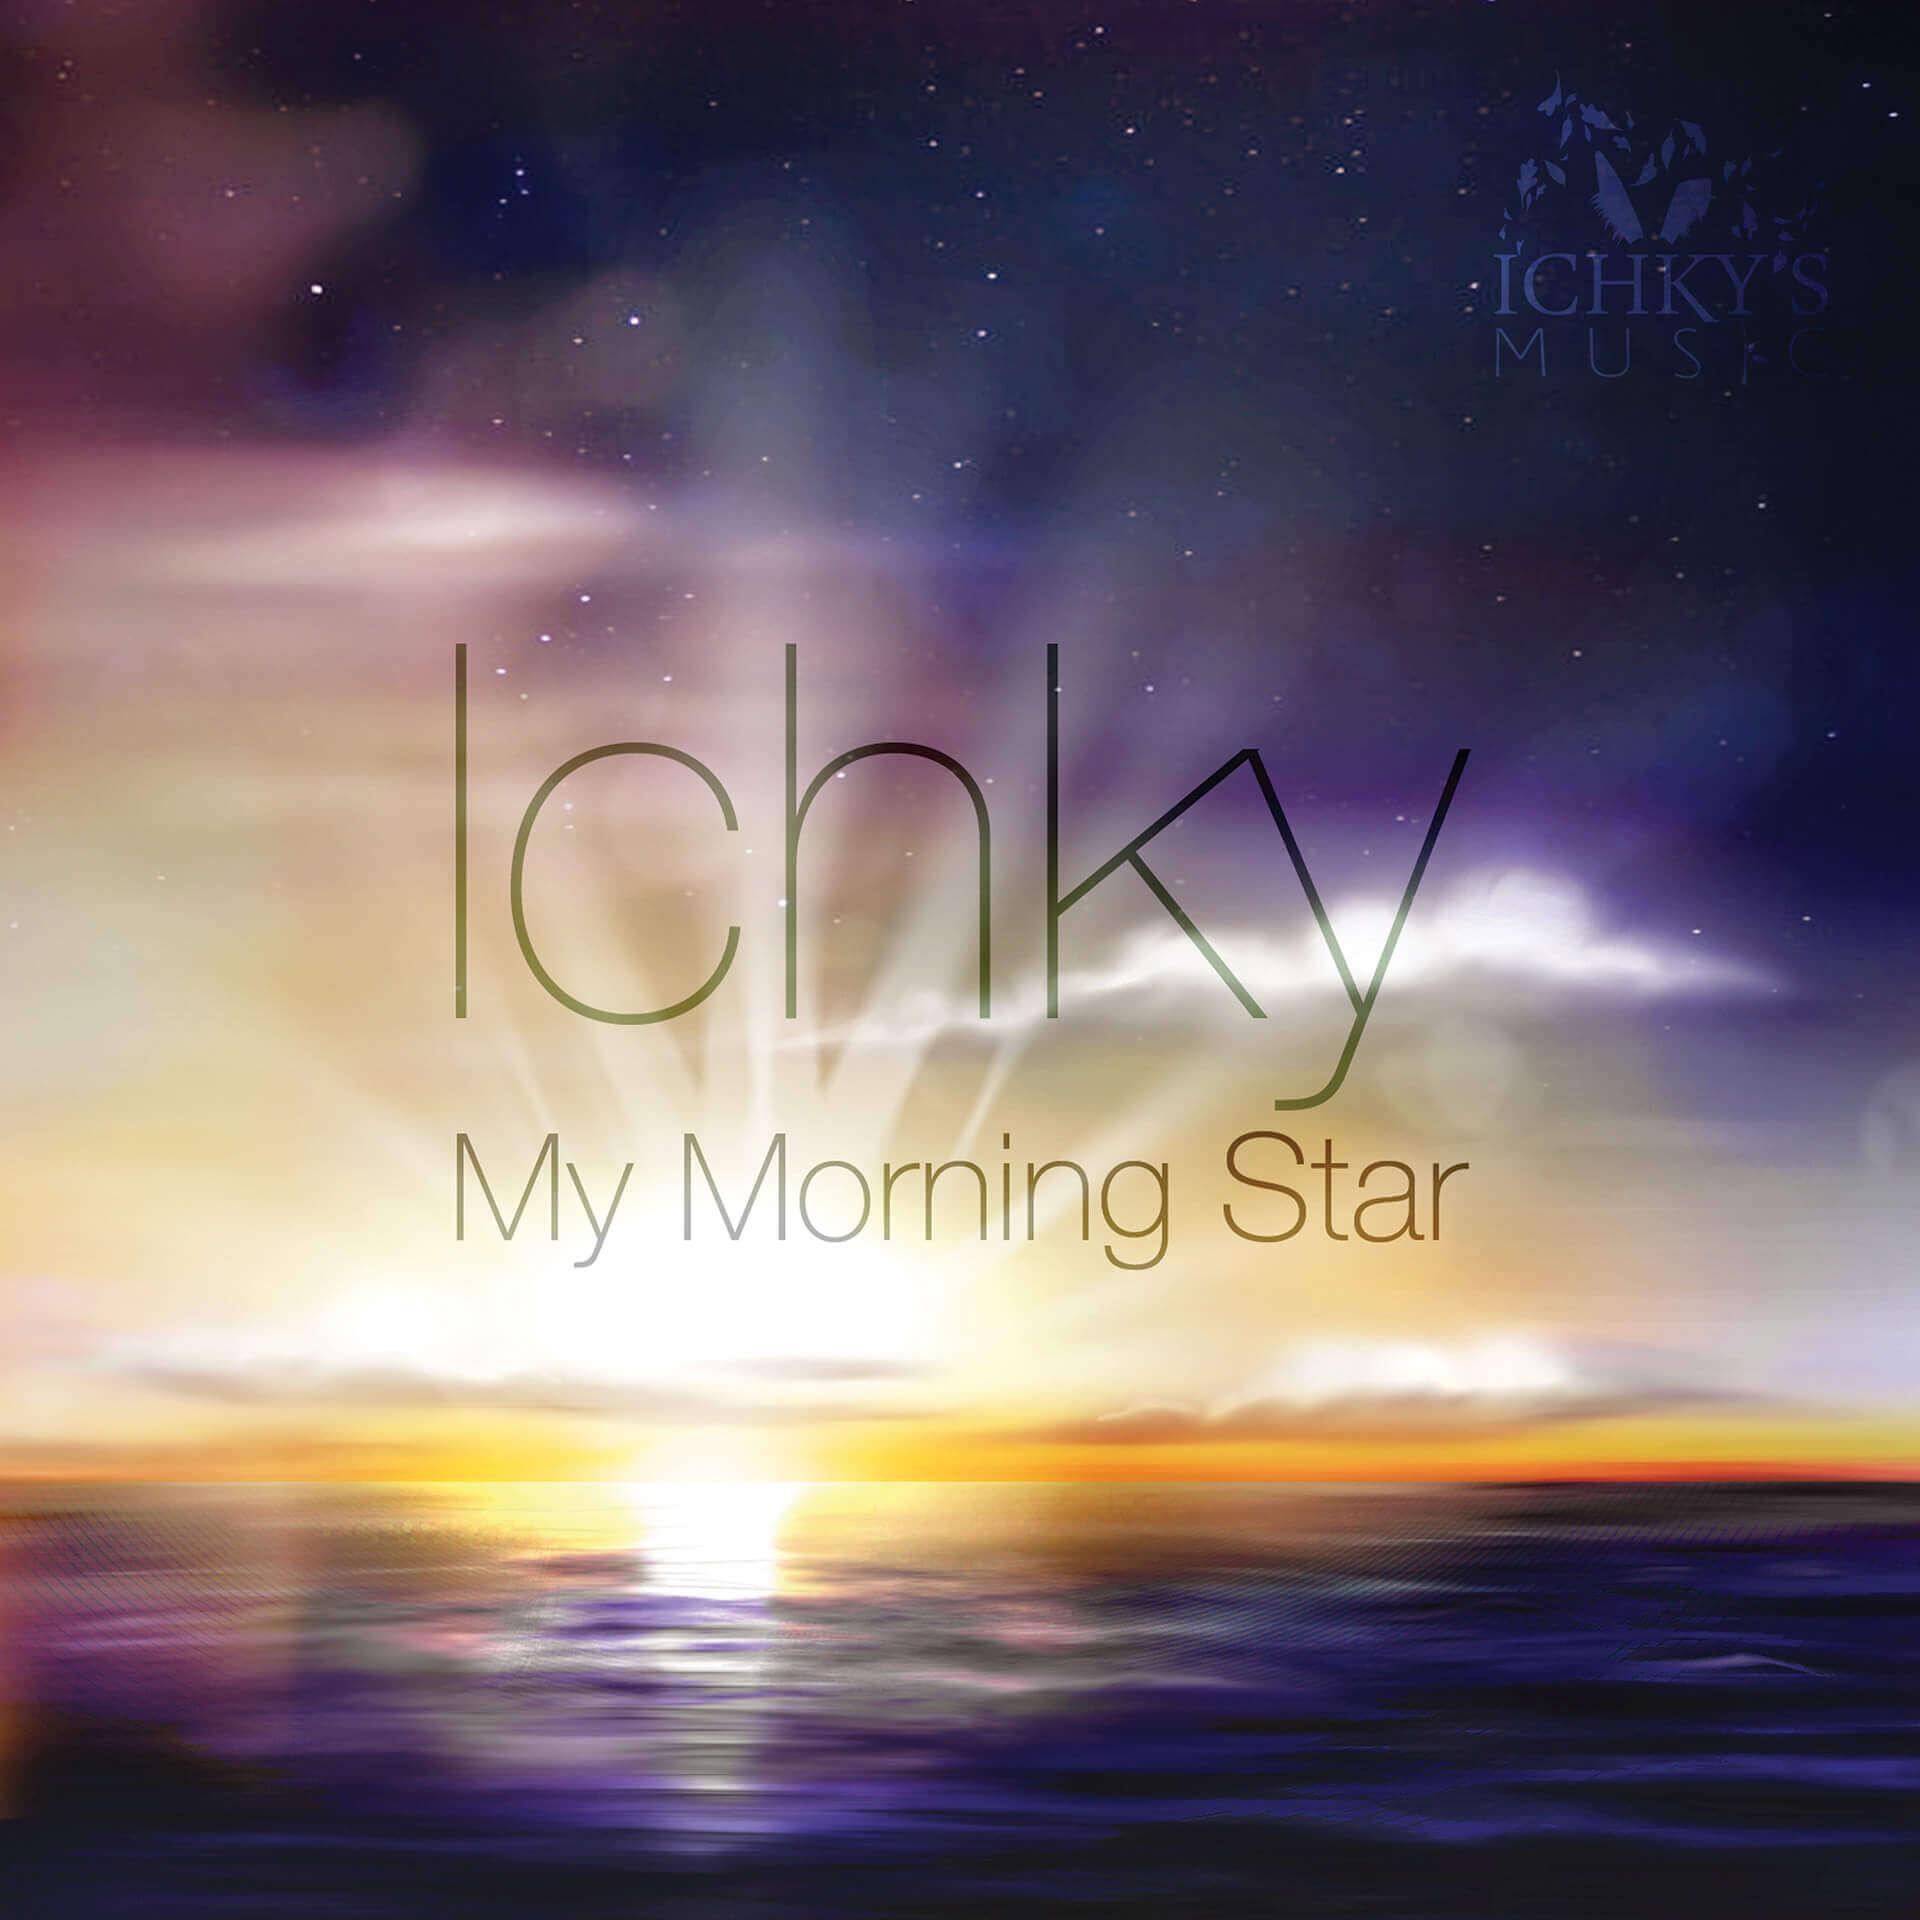 Ichky’s Music album cover designs